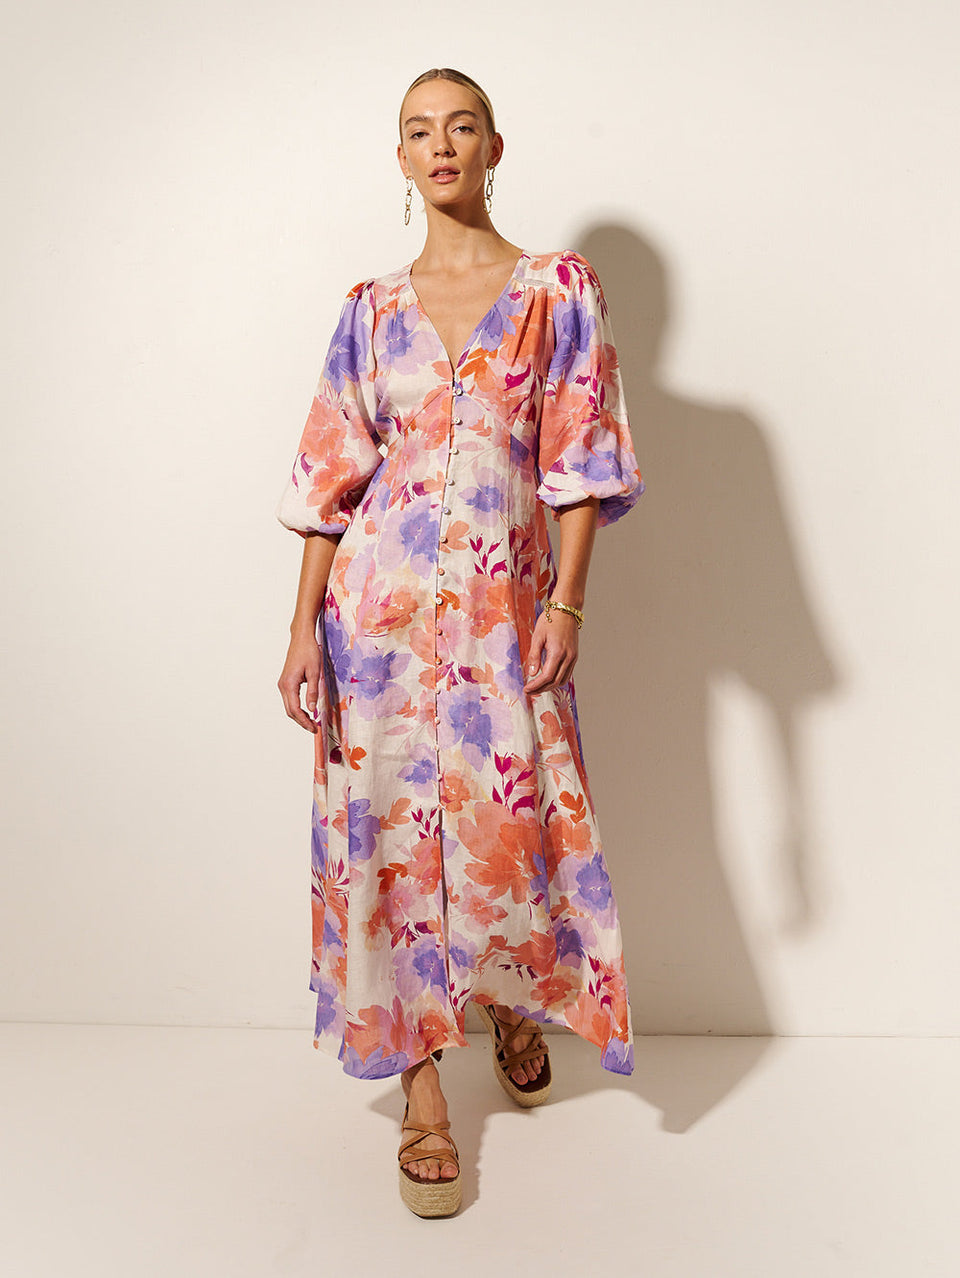 Johannes Maxi Dress KIVARI | Model wears pink and purple floral maxi dress